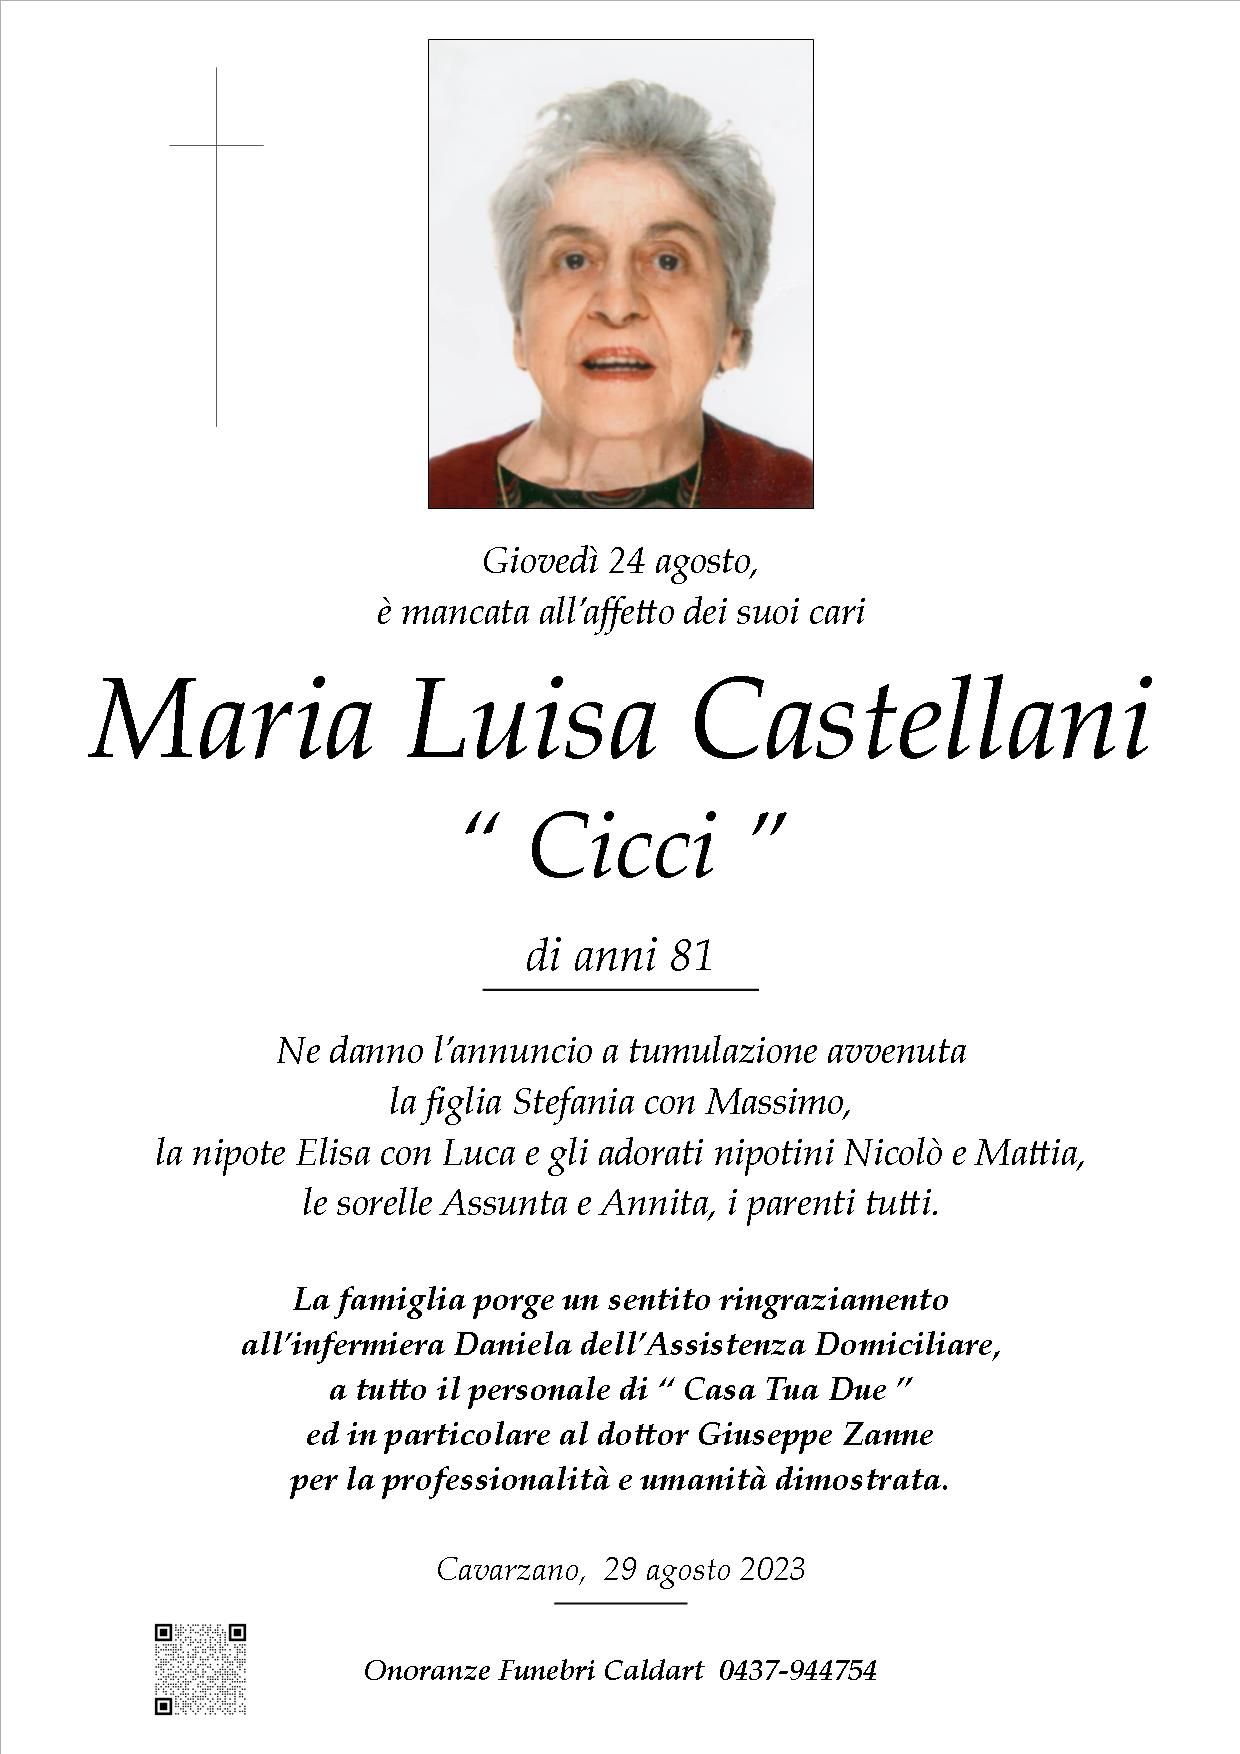 Castellani Maria Luisa